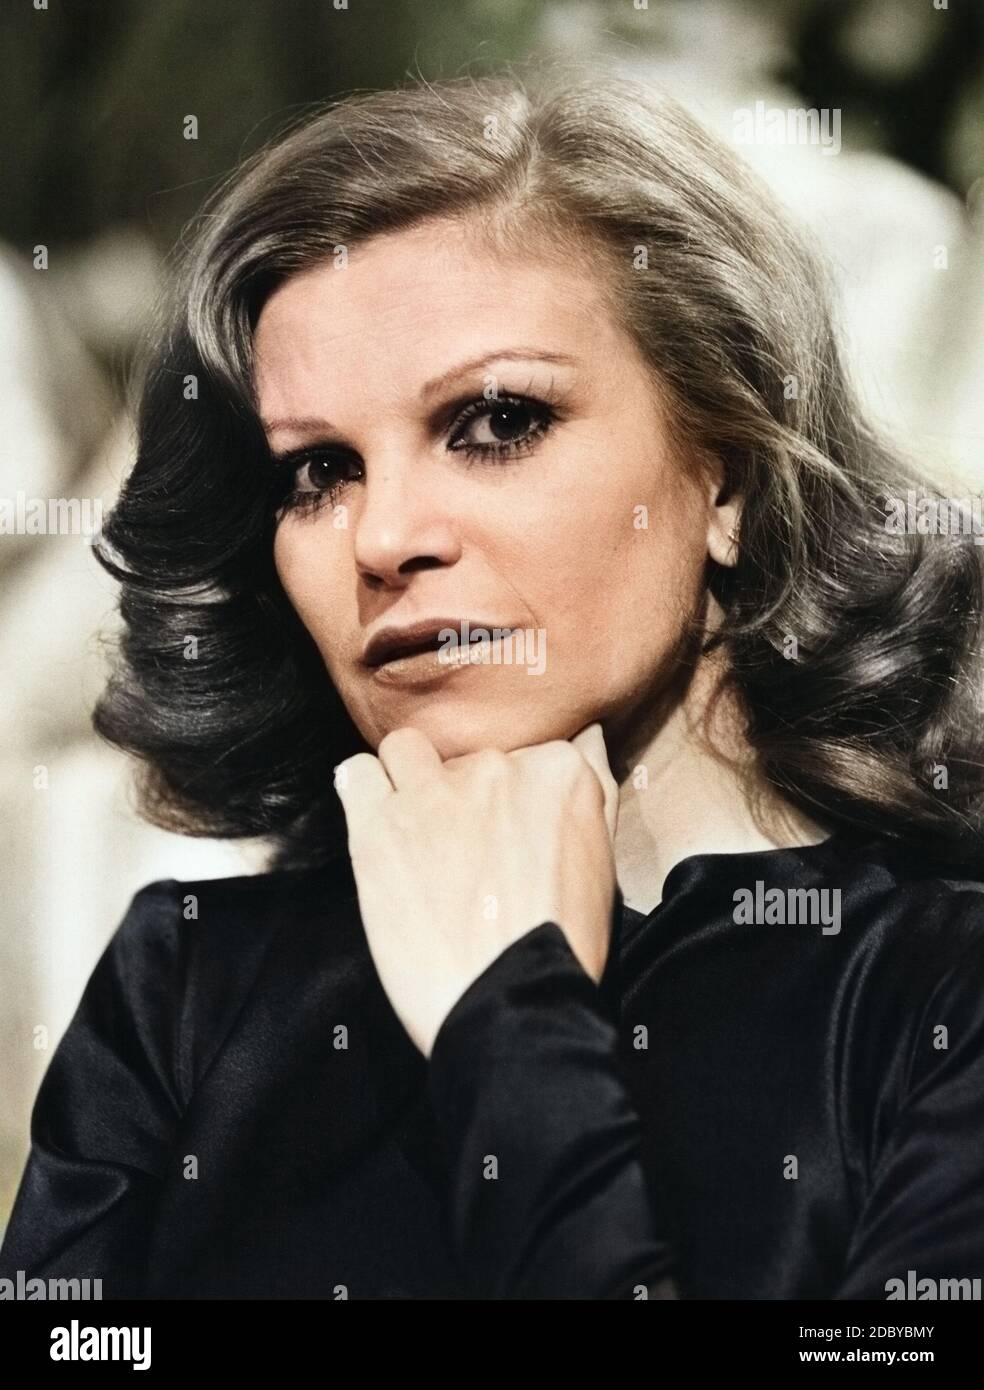 Milva, italienische Sängerin und Schauspielerin, Deutschland um 1978. Italian attrice e cantante Milva, Germania intorno al 1978. Foto Stock